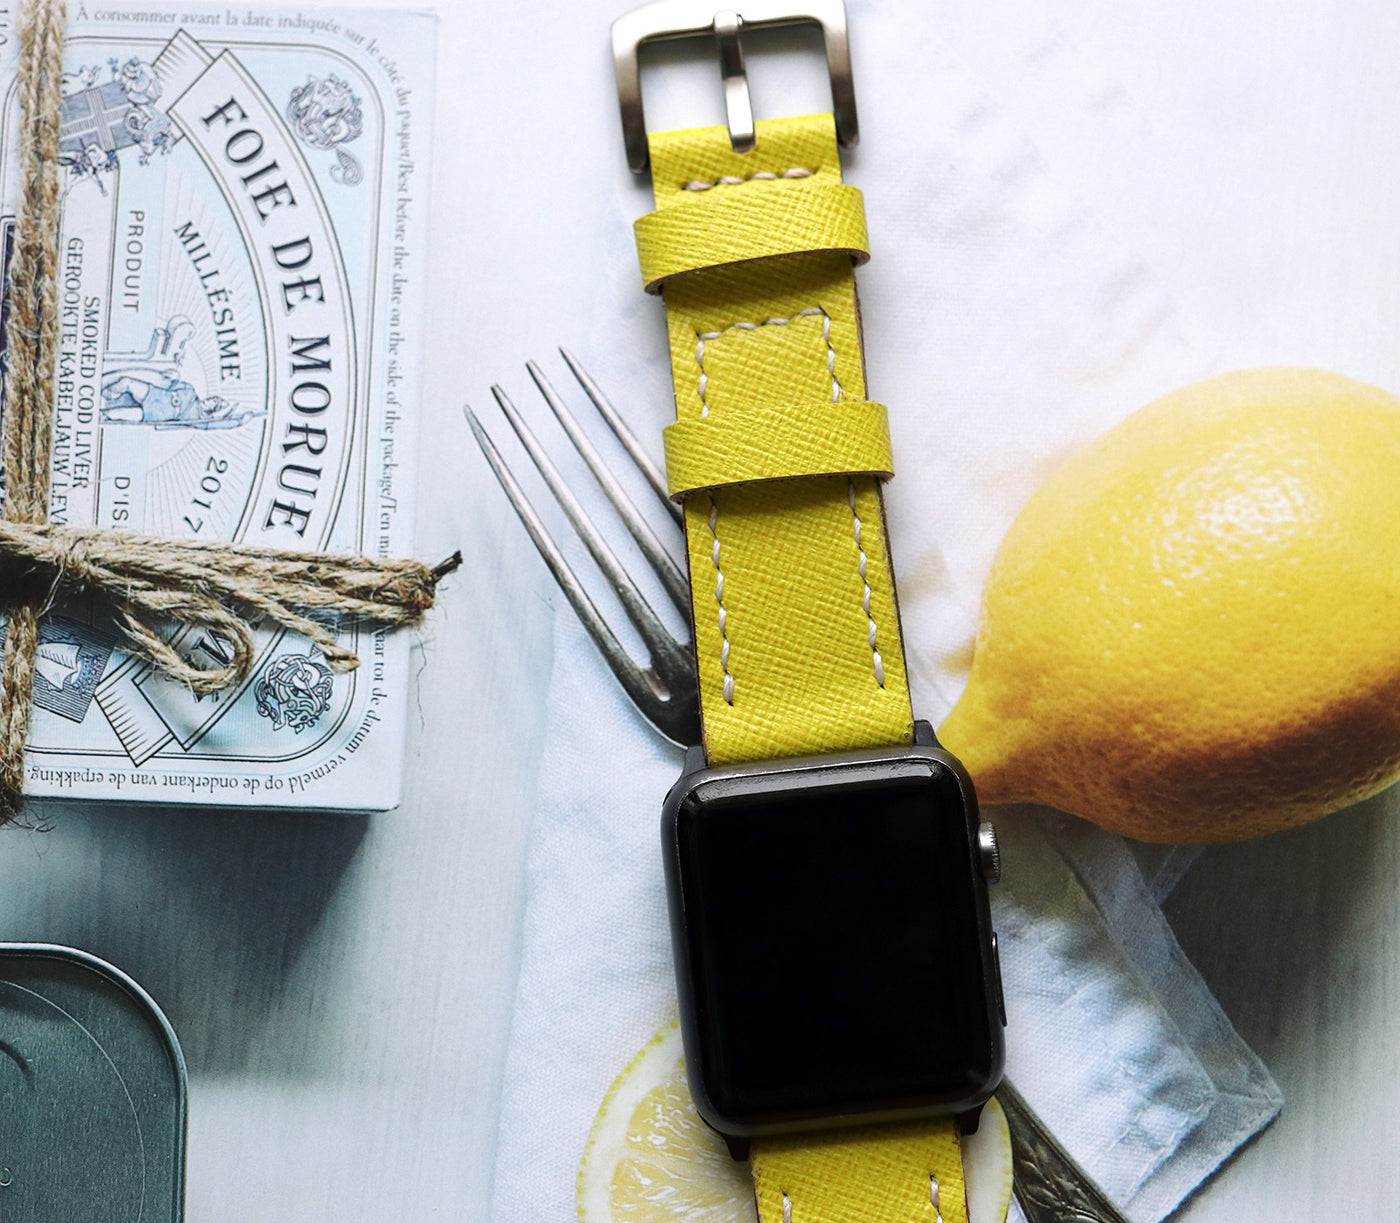 Özel Yapım Apple Watch Deri Saat Kayışı - Lime Saffiano